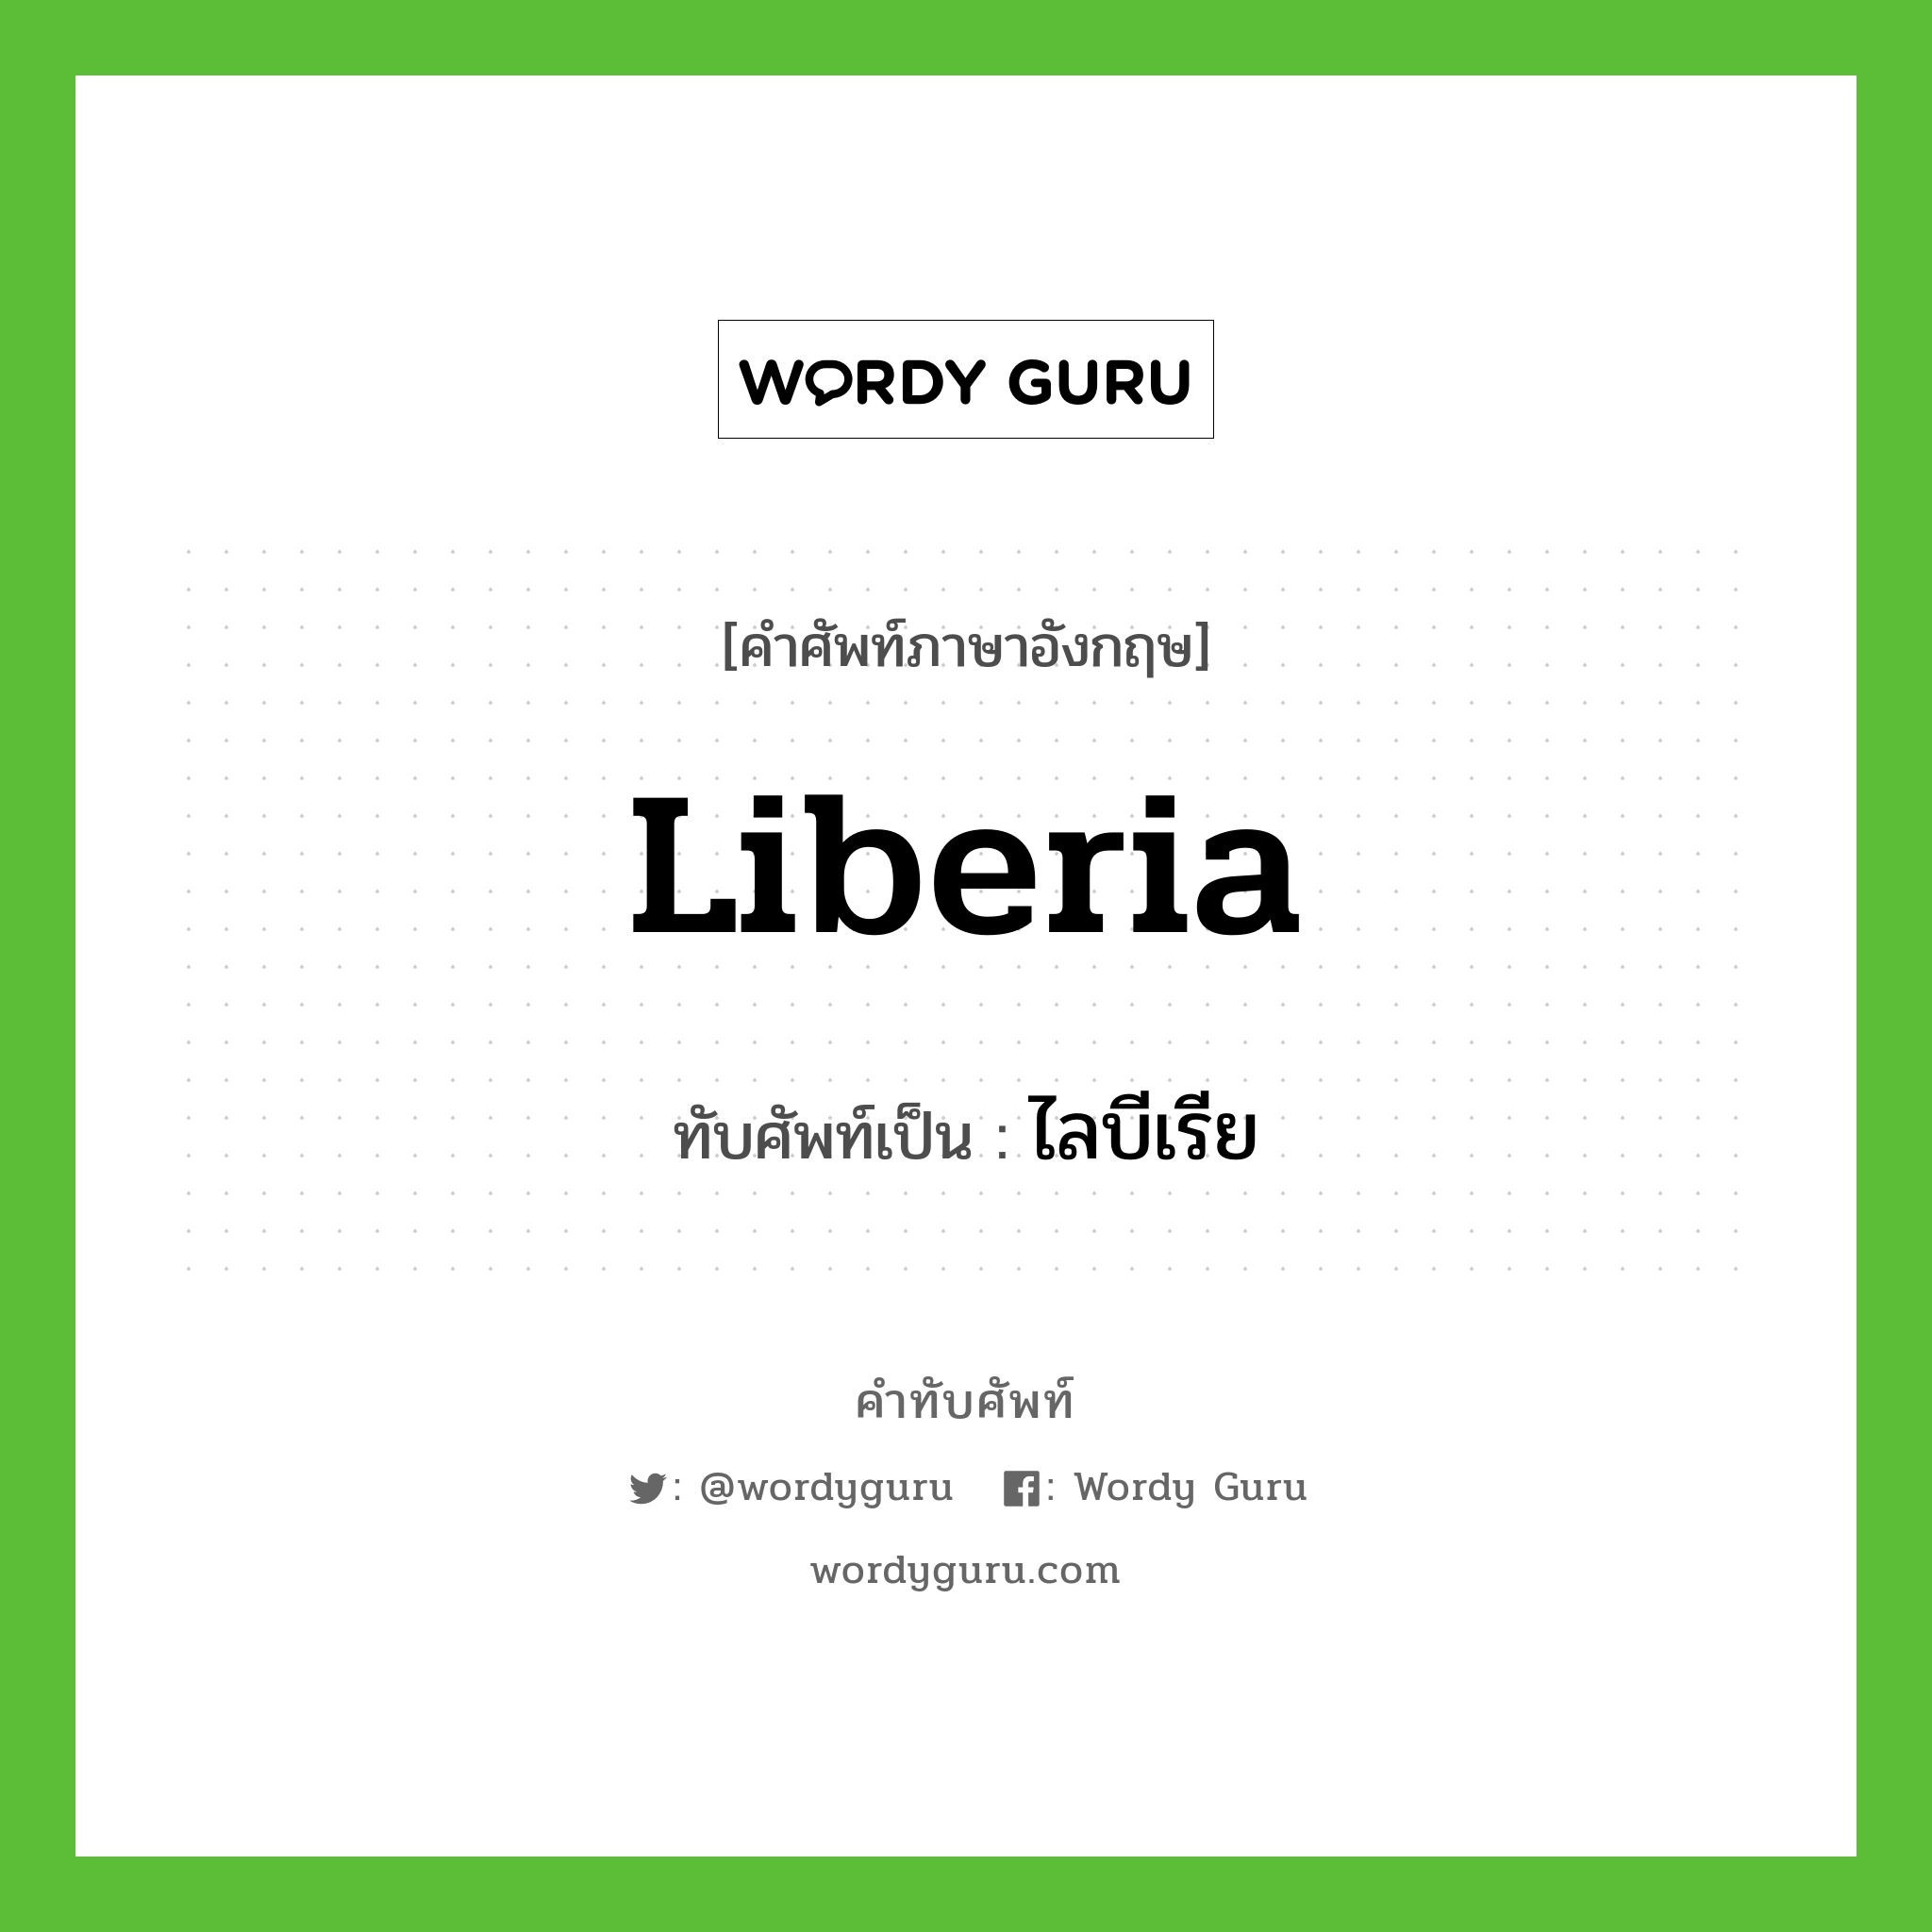 ไลบีเรีย เขียนอย่างไร?, คำศัพท์ภาษาอังกฤษ ไลบีเรีย ทับศัพท์เป็น Liberia